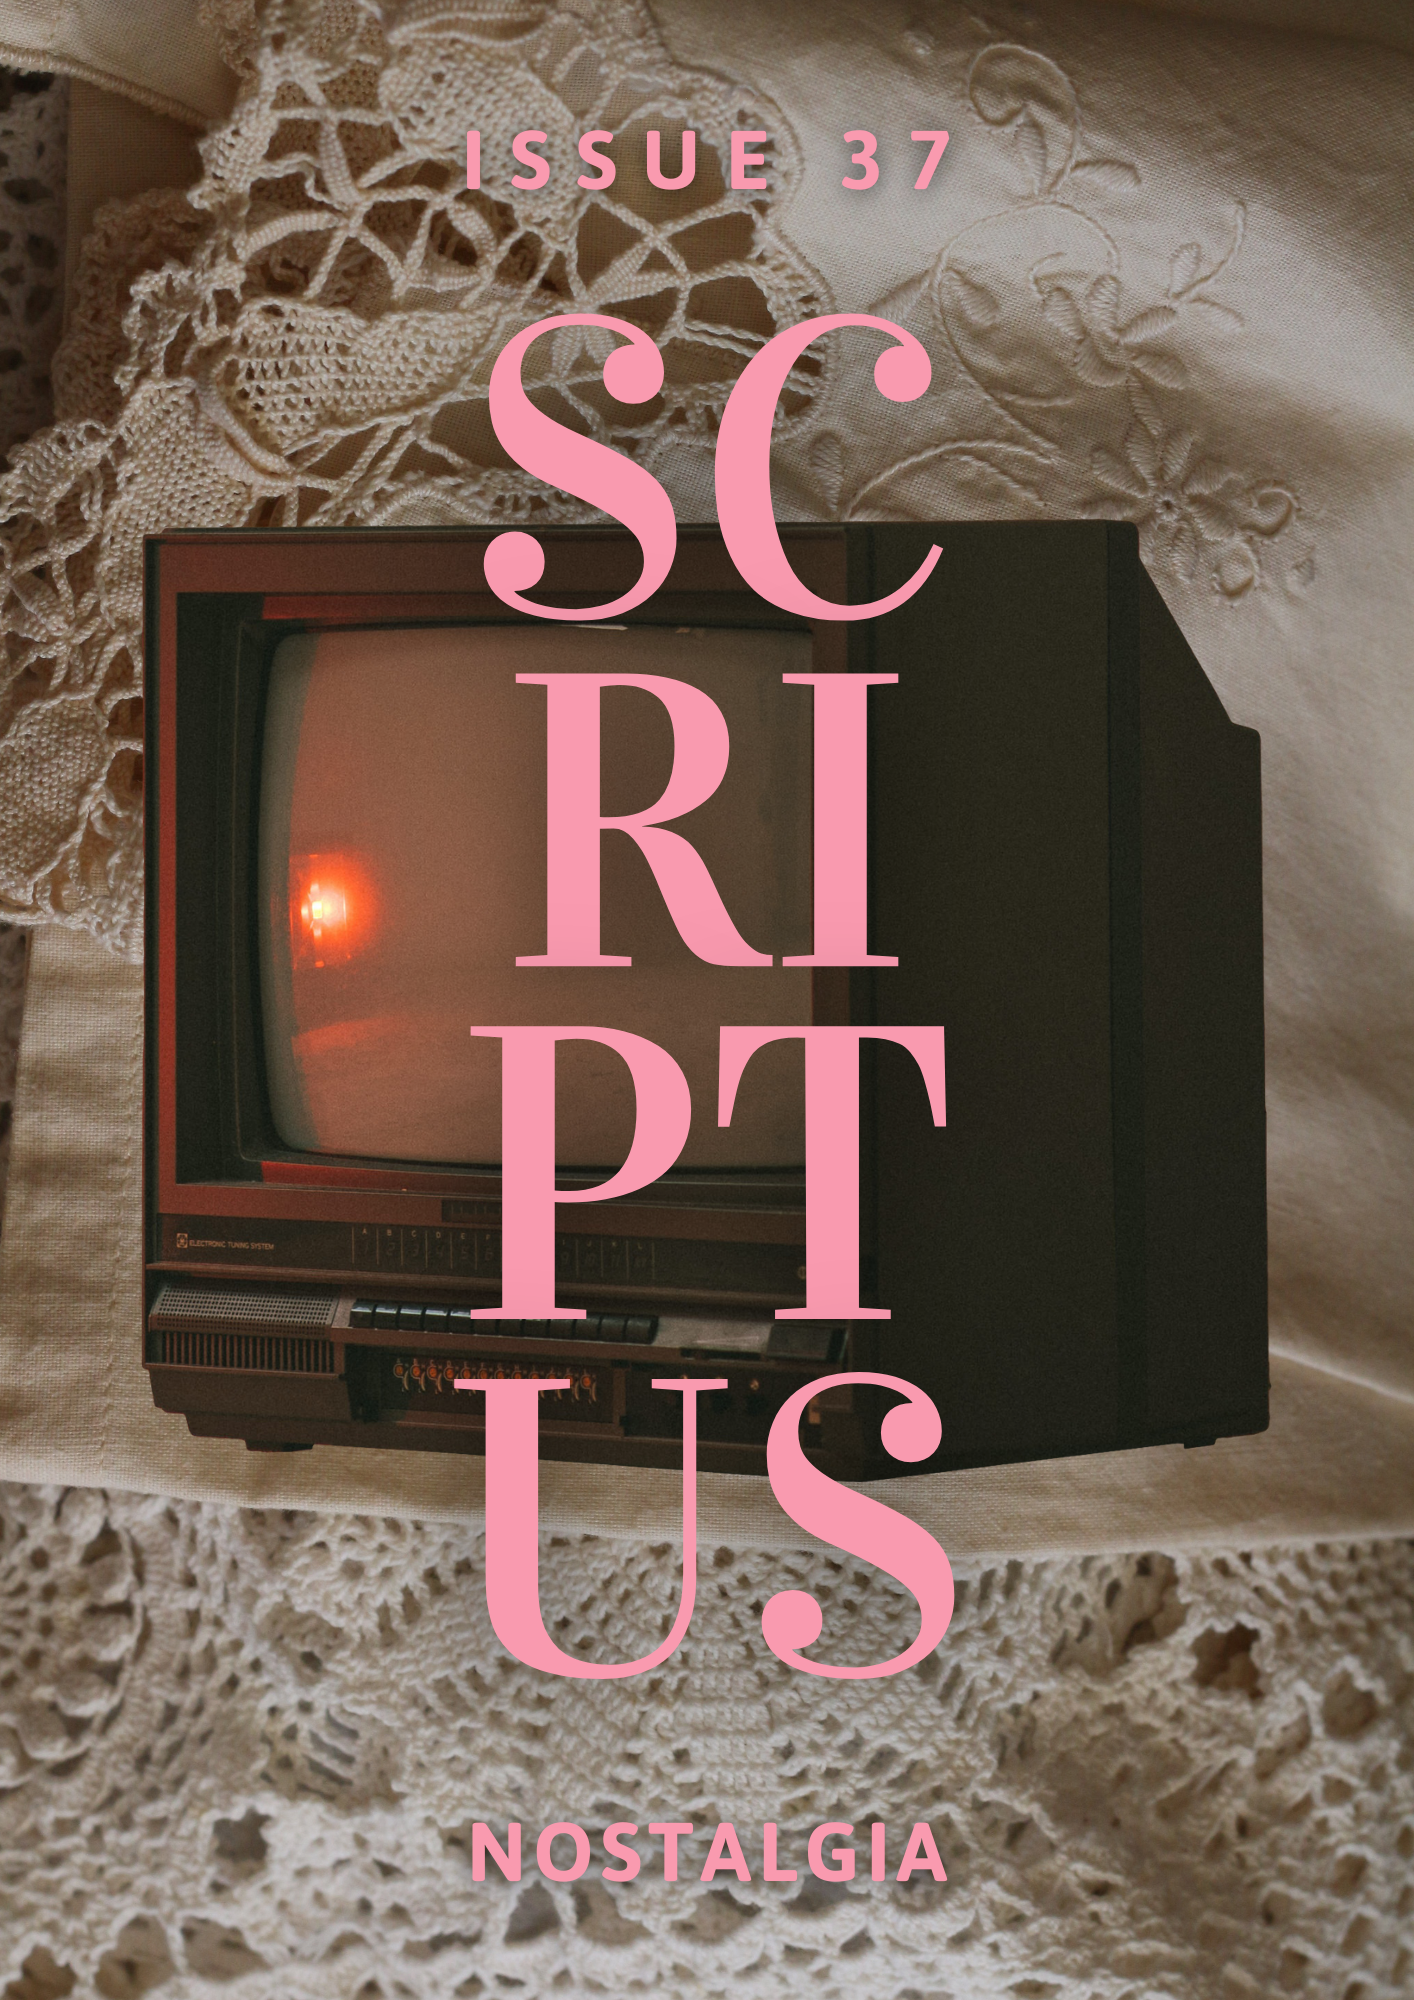 scriptus cover issue 37